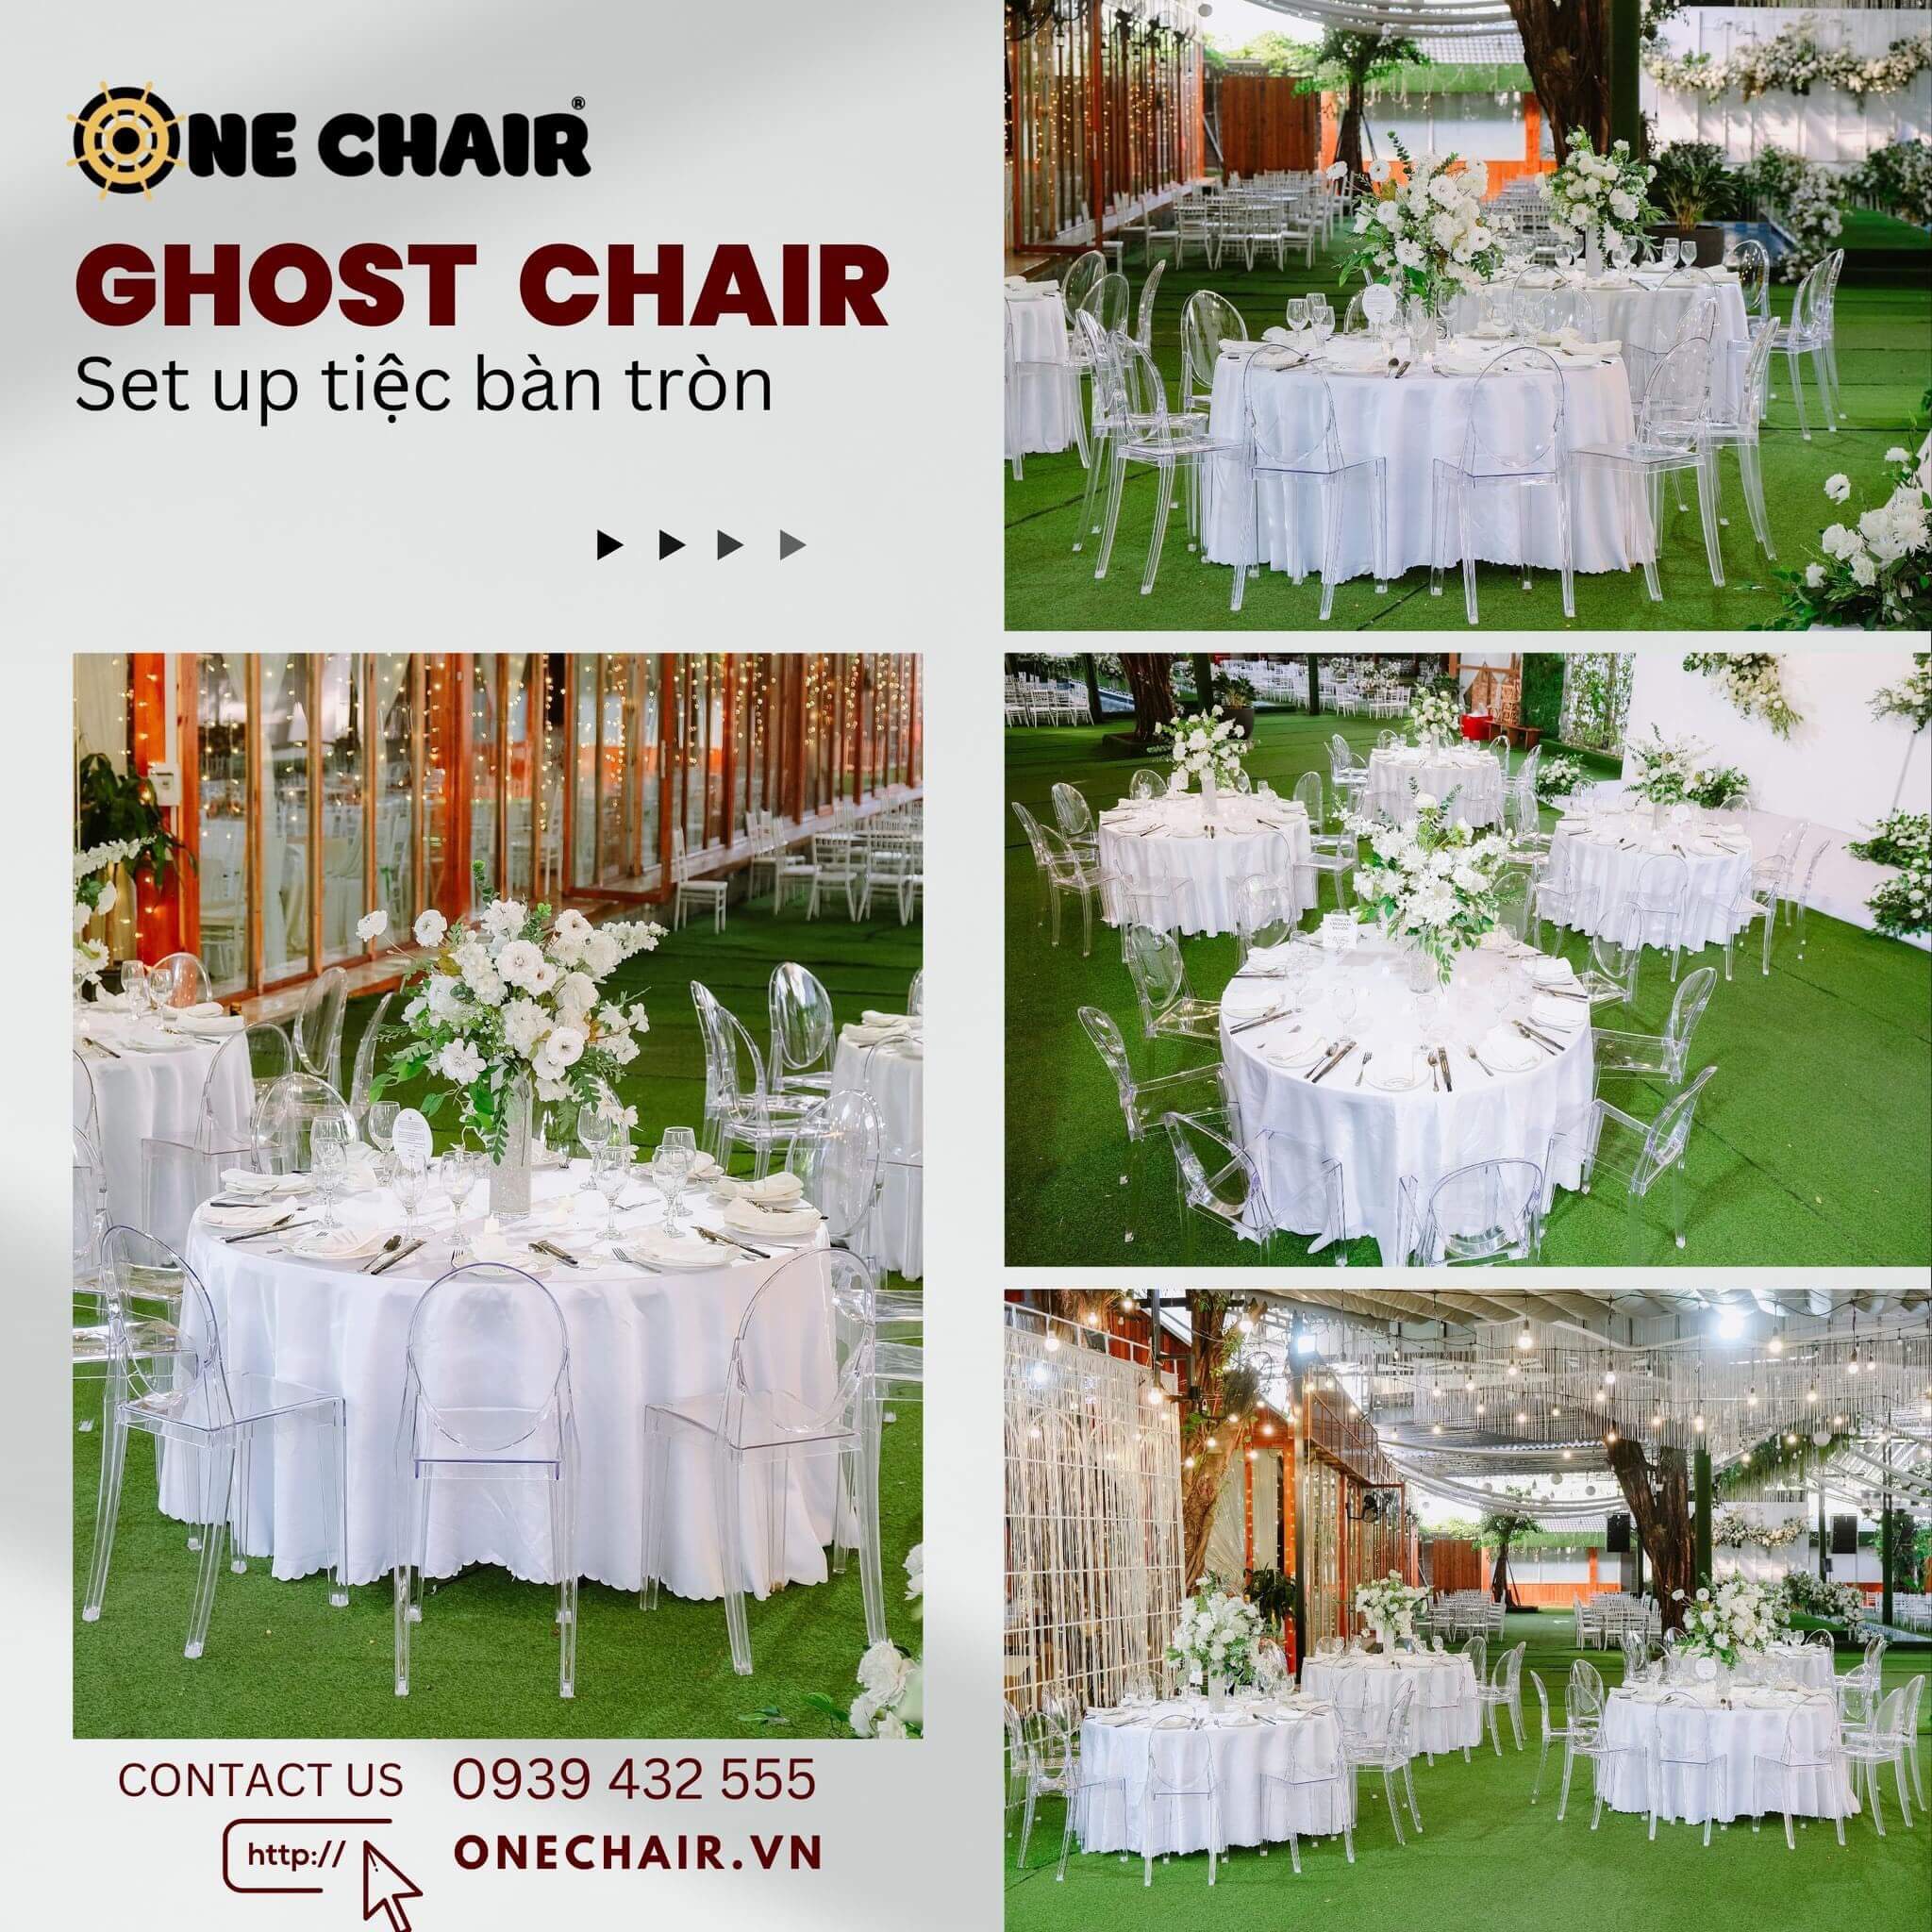 Hình 4: Cho thuê bàn ghế sự kiện tiệc đám cưới ngoài trời cao cấp tại Quận 2 HCM.